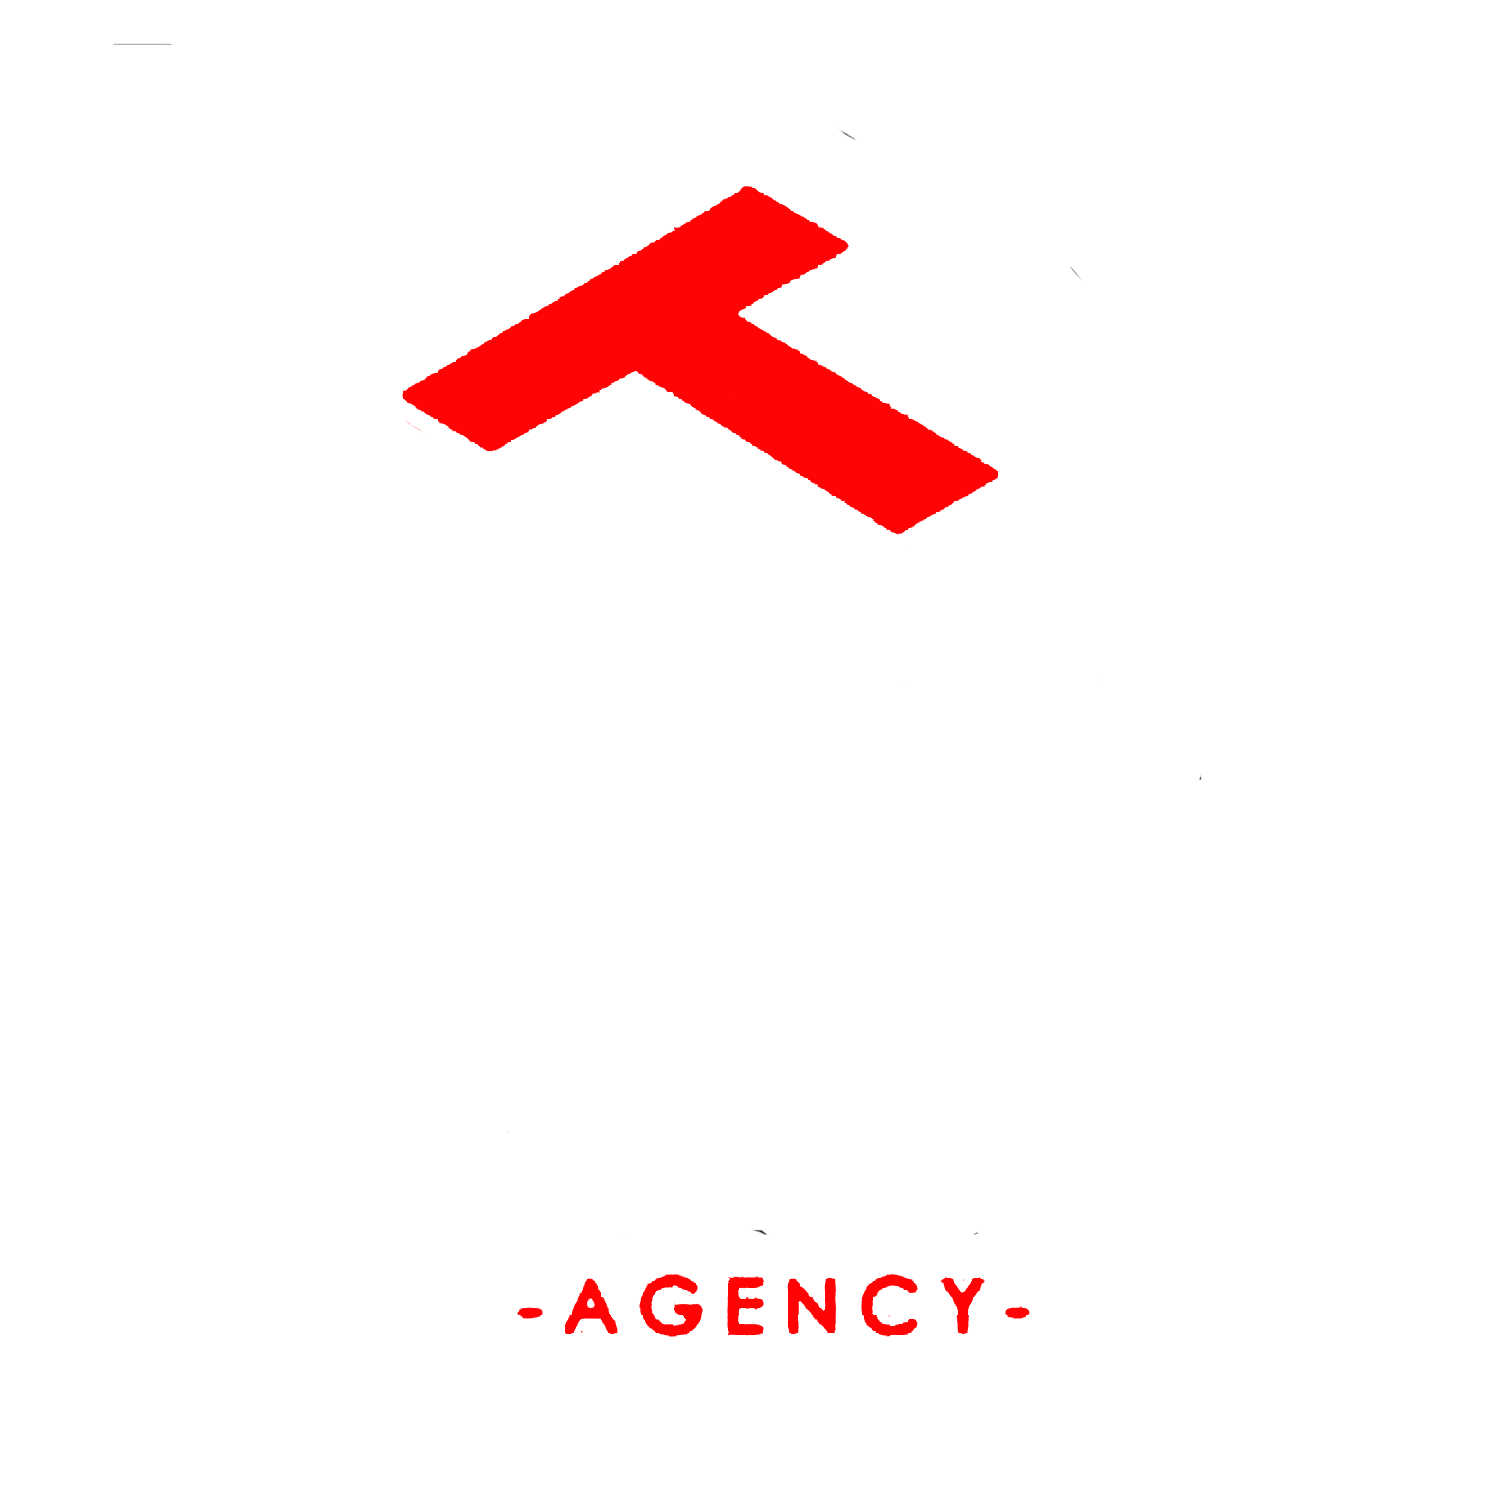 www.tacticalsolutionsagency.com